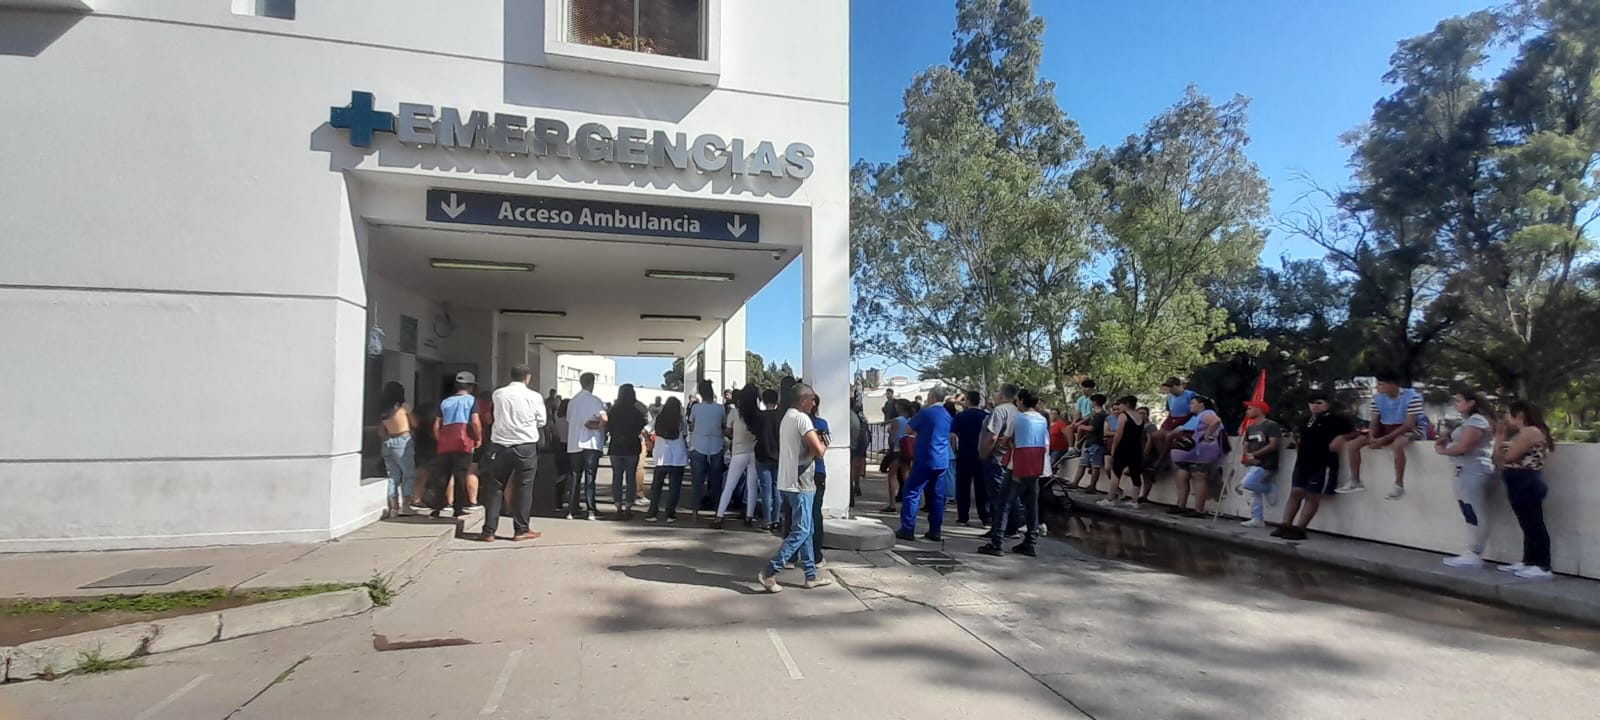 Salud en crisis: el gobierno de Córdoba echó a más de 100 agentes de salud